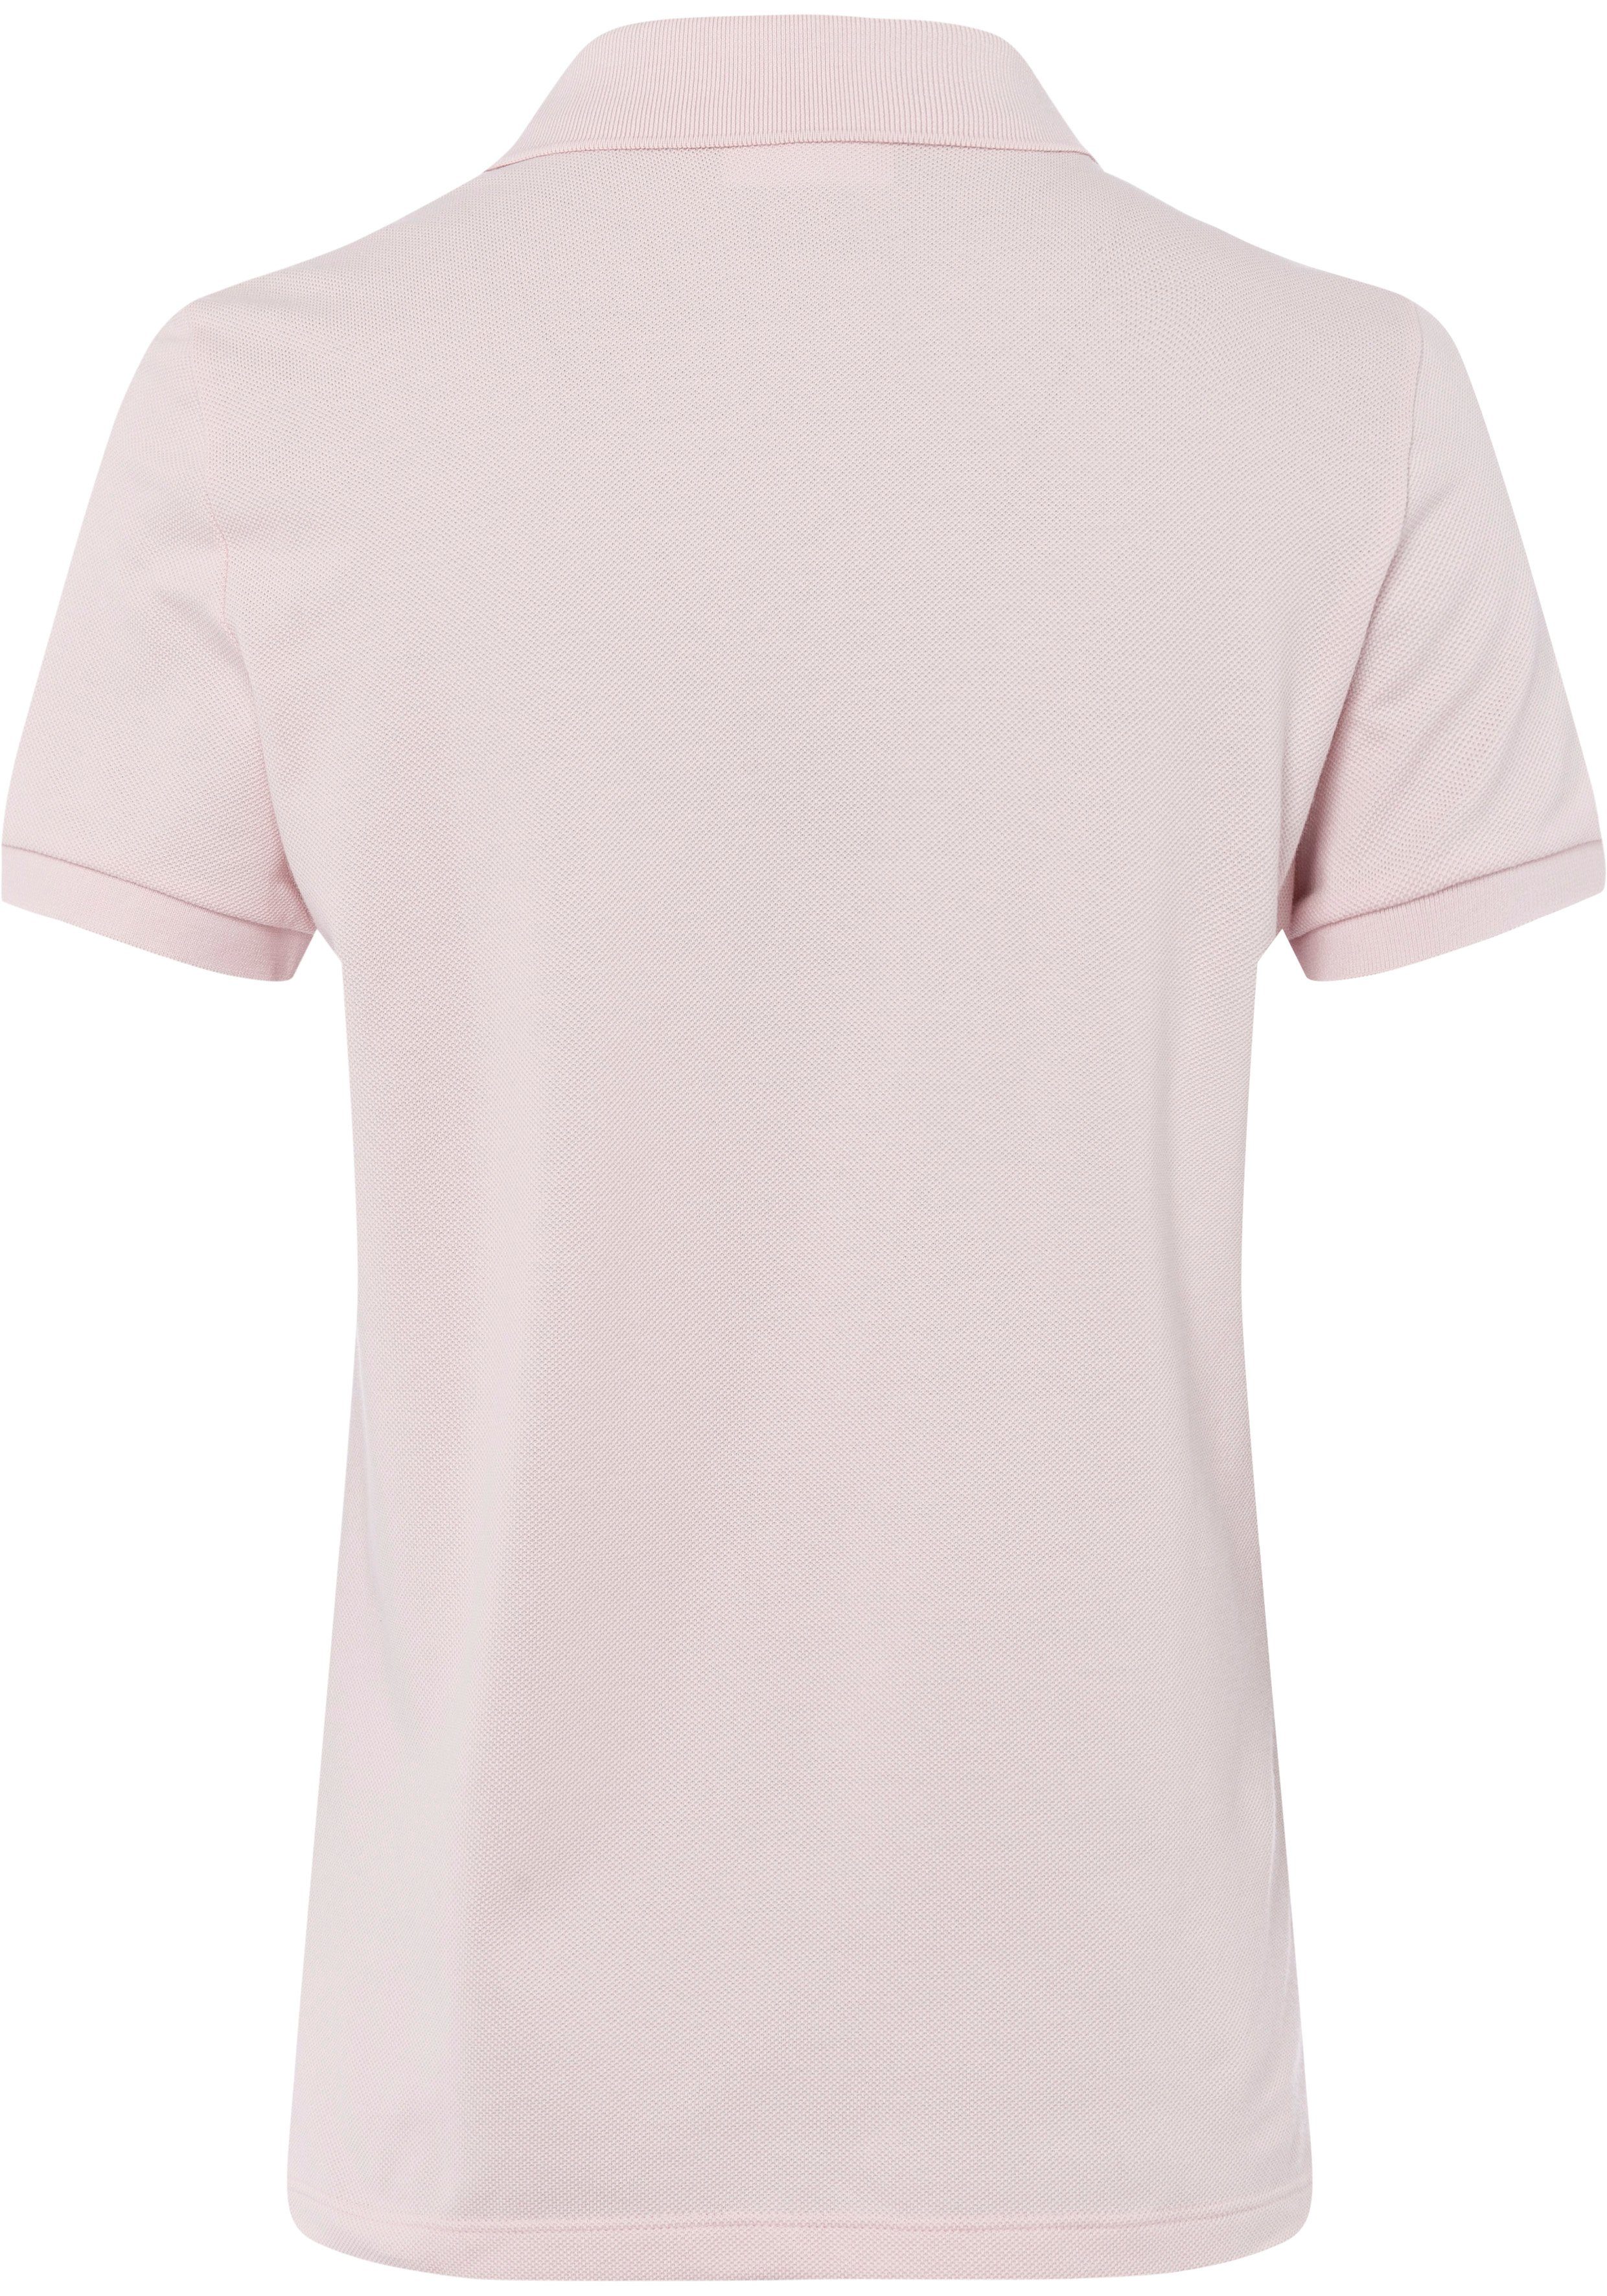 mit der Lacoste Poloshirt rosa Lacoste-Logo-Patch auf Brust